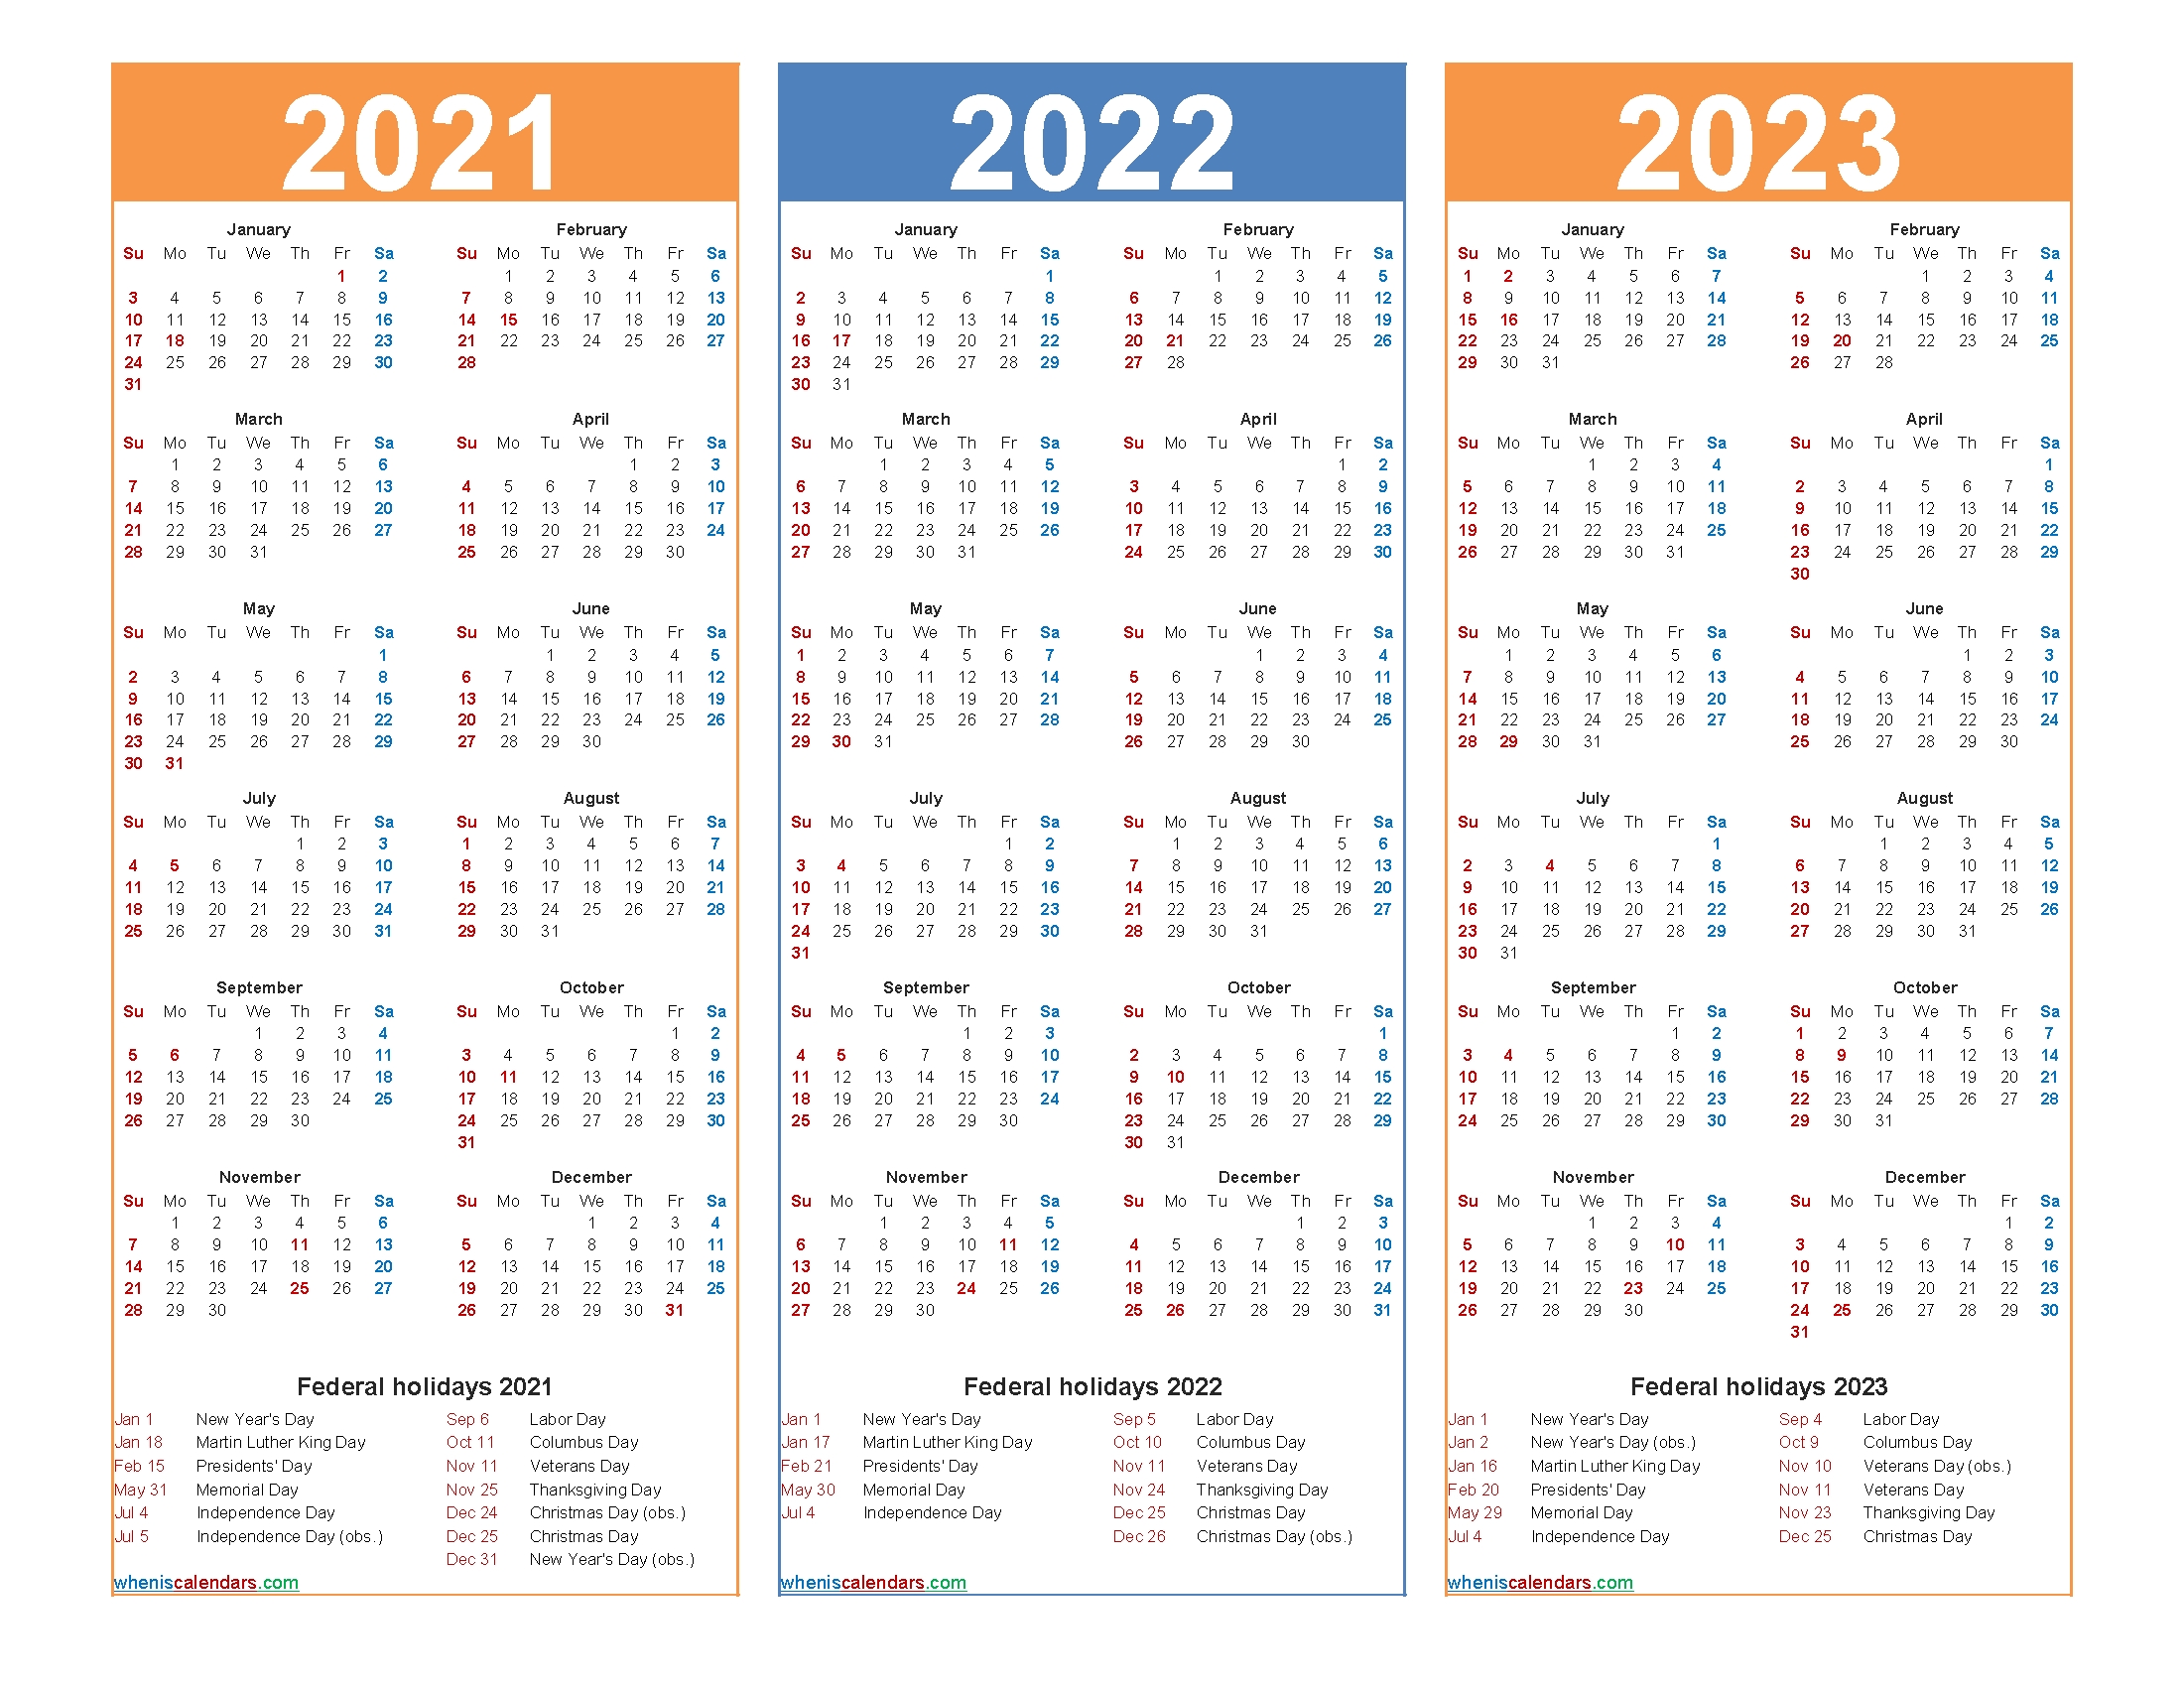 Free Printable 2021 To 2023 Calendar With Holidays – Free Printable 2020 Monthly Calendar With-3 Year Calendars 2021 2022 2023 Free Printable